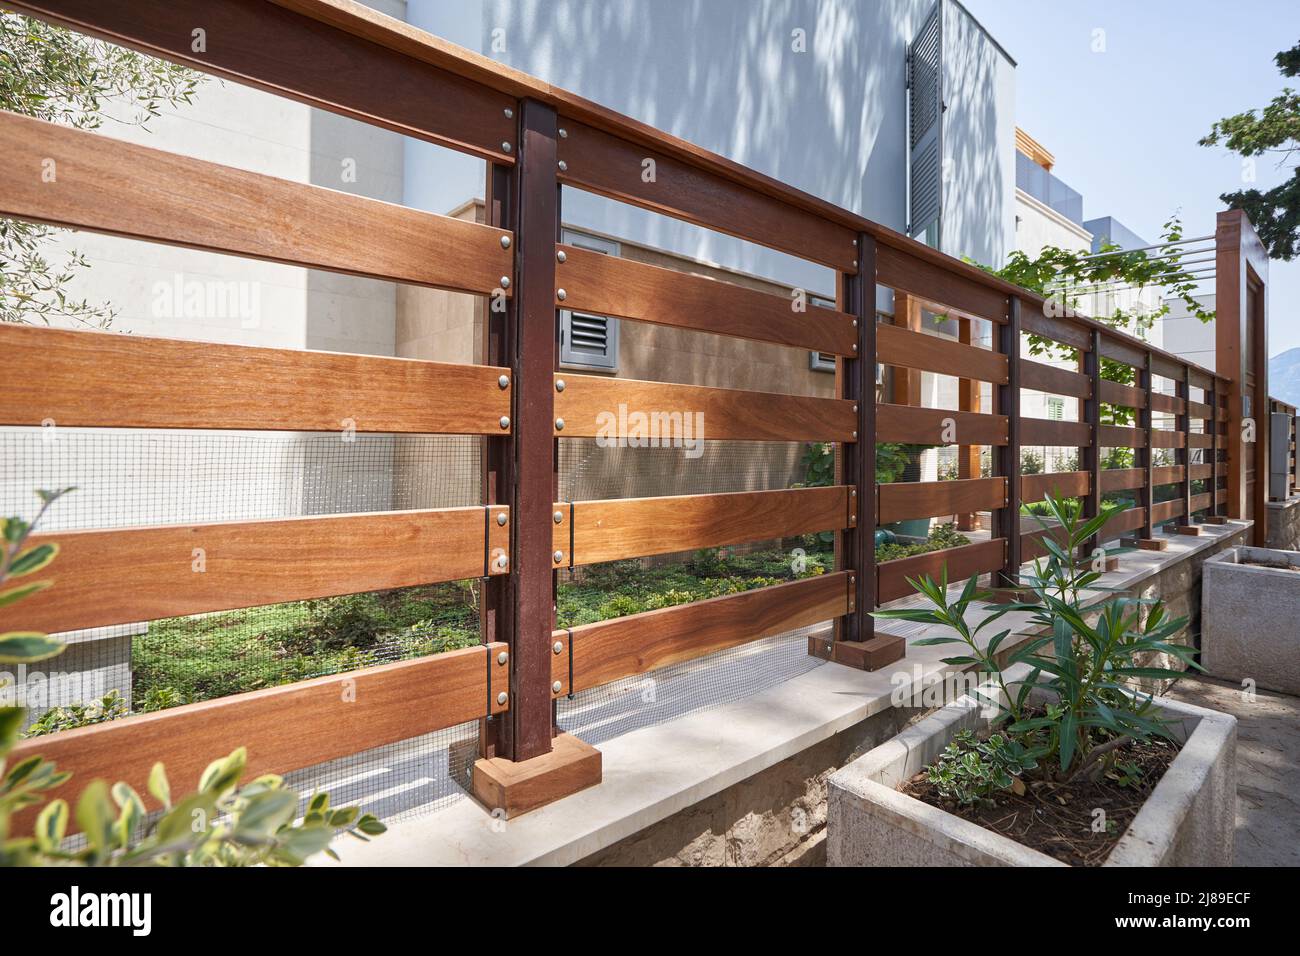 Verja de madera transparente en una casa moderna Foto de stock